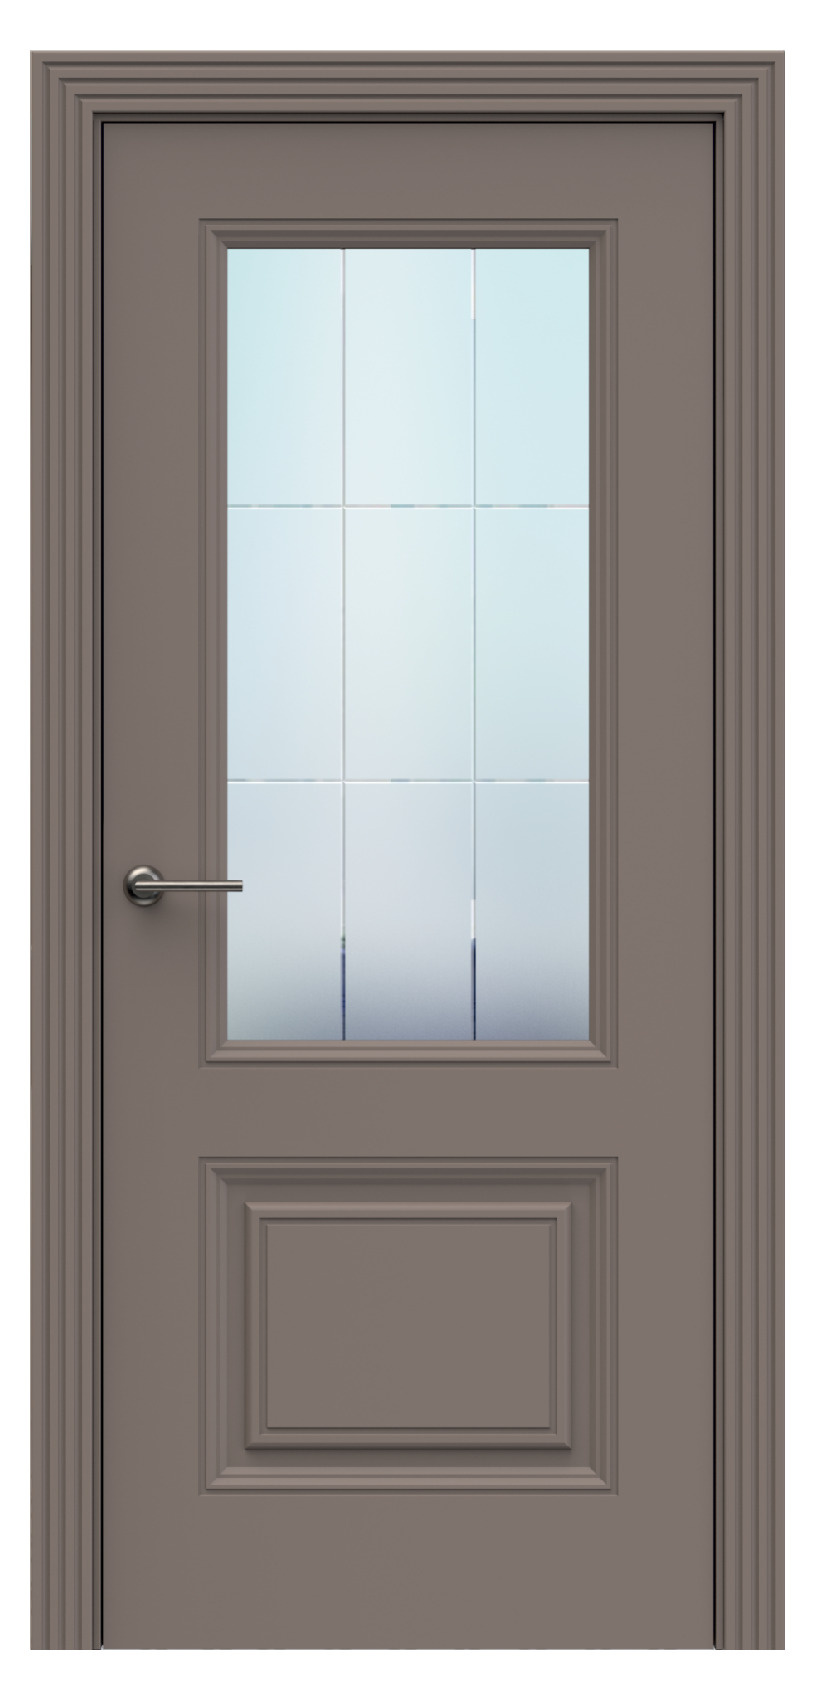 Questdoors Межкомнатная дверь QB2, арт. 17903 - фото №1